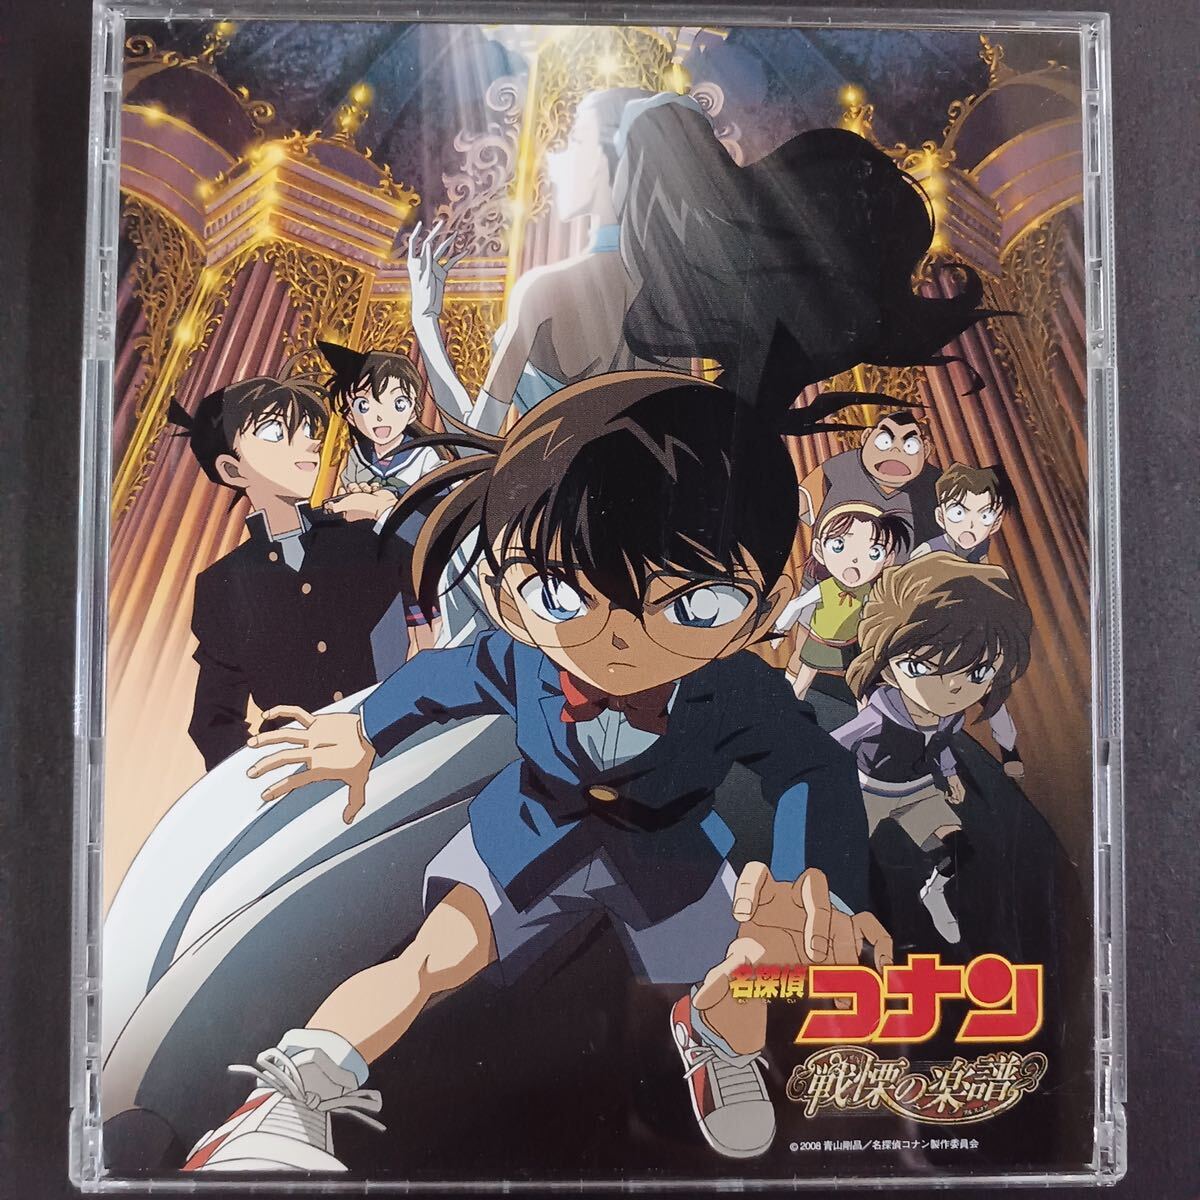 CD_31] Detective Conan / битва .. музыкальное сопровождение оригинал саундтрек 